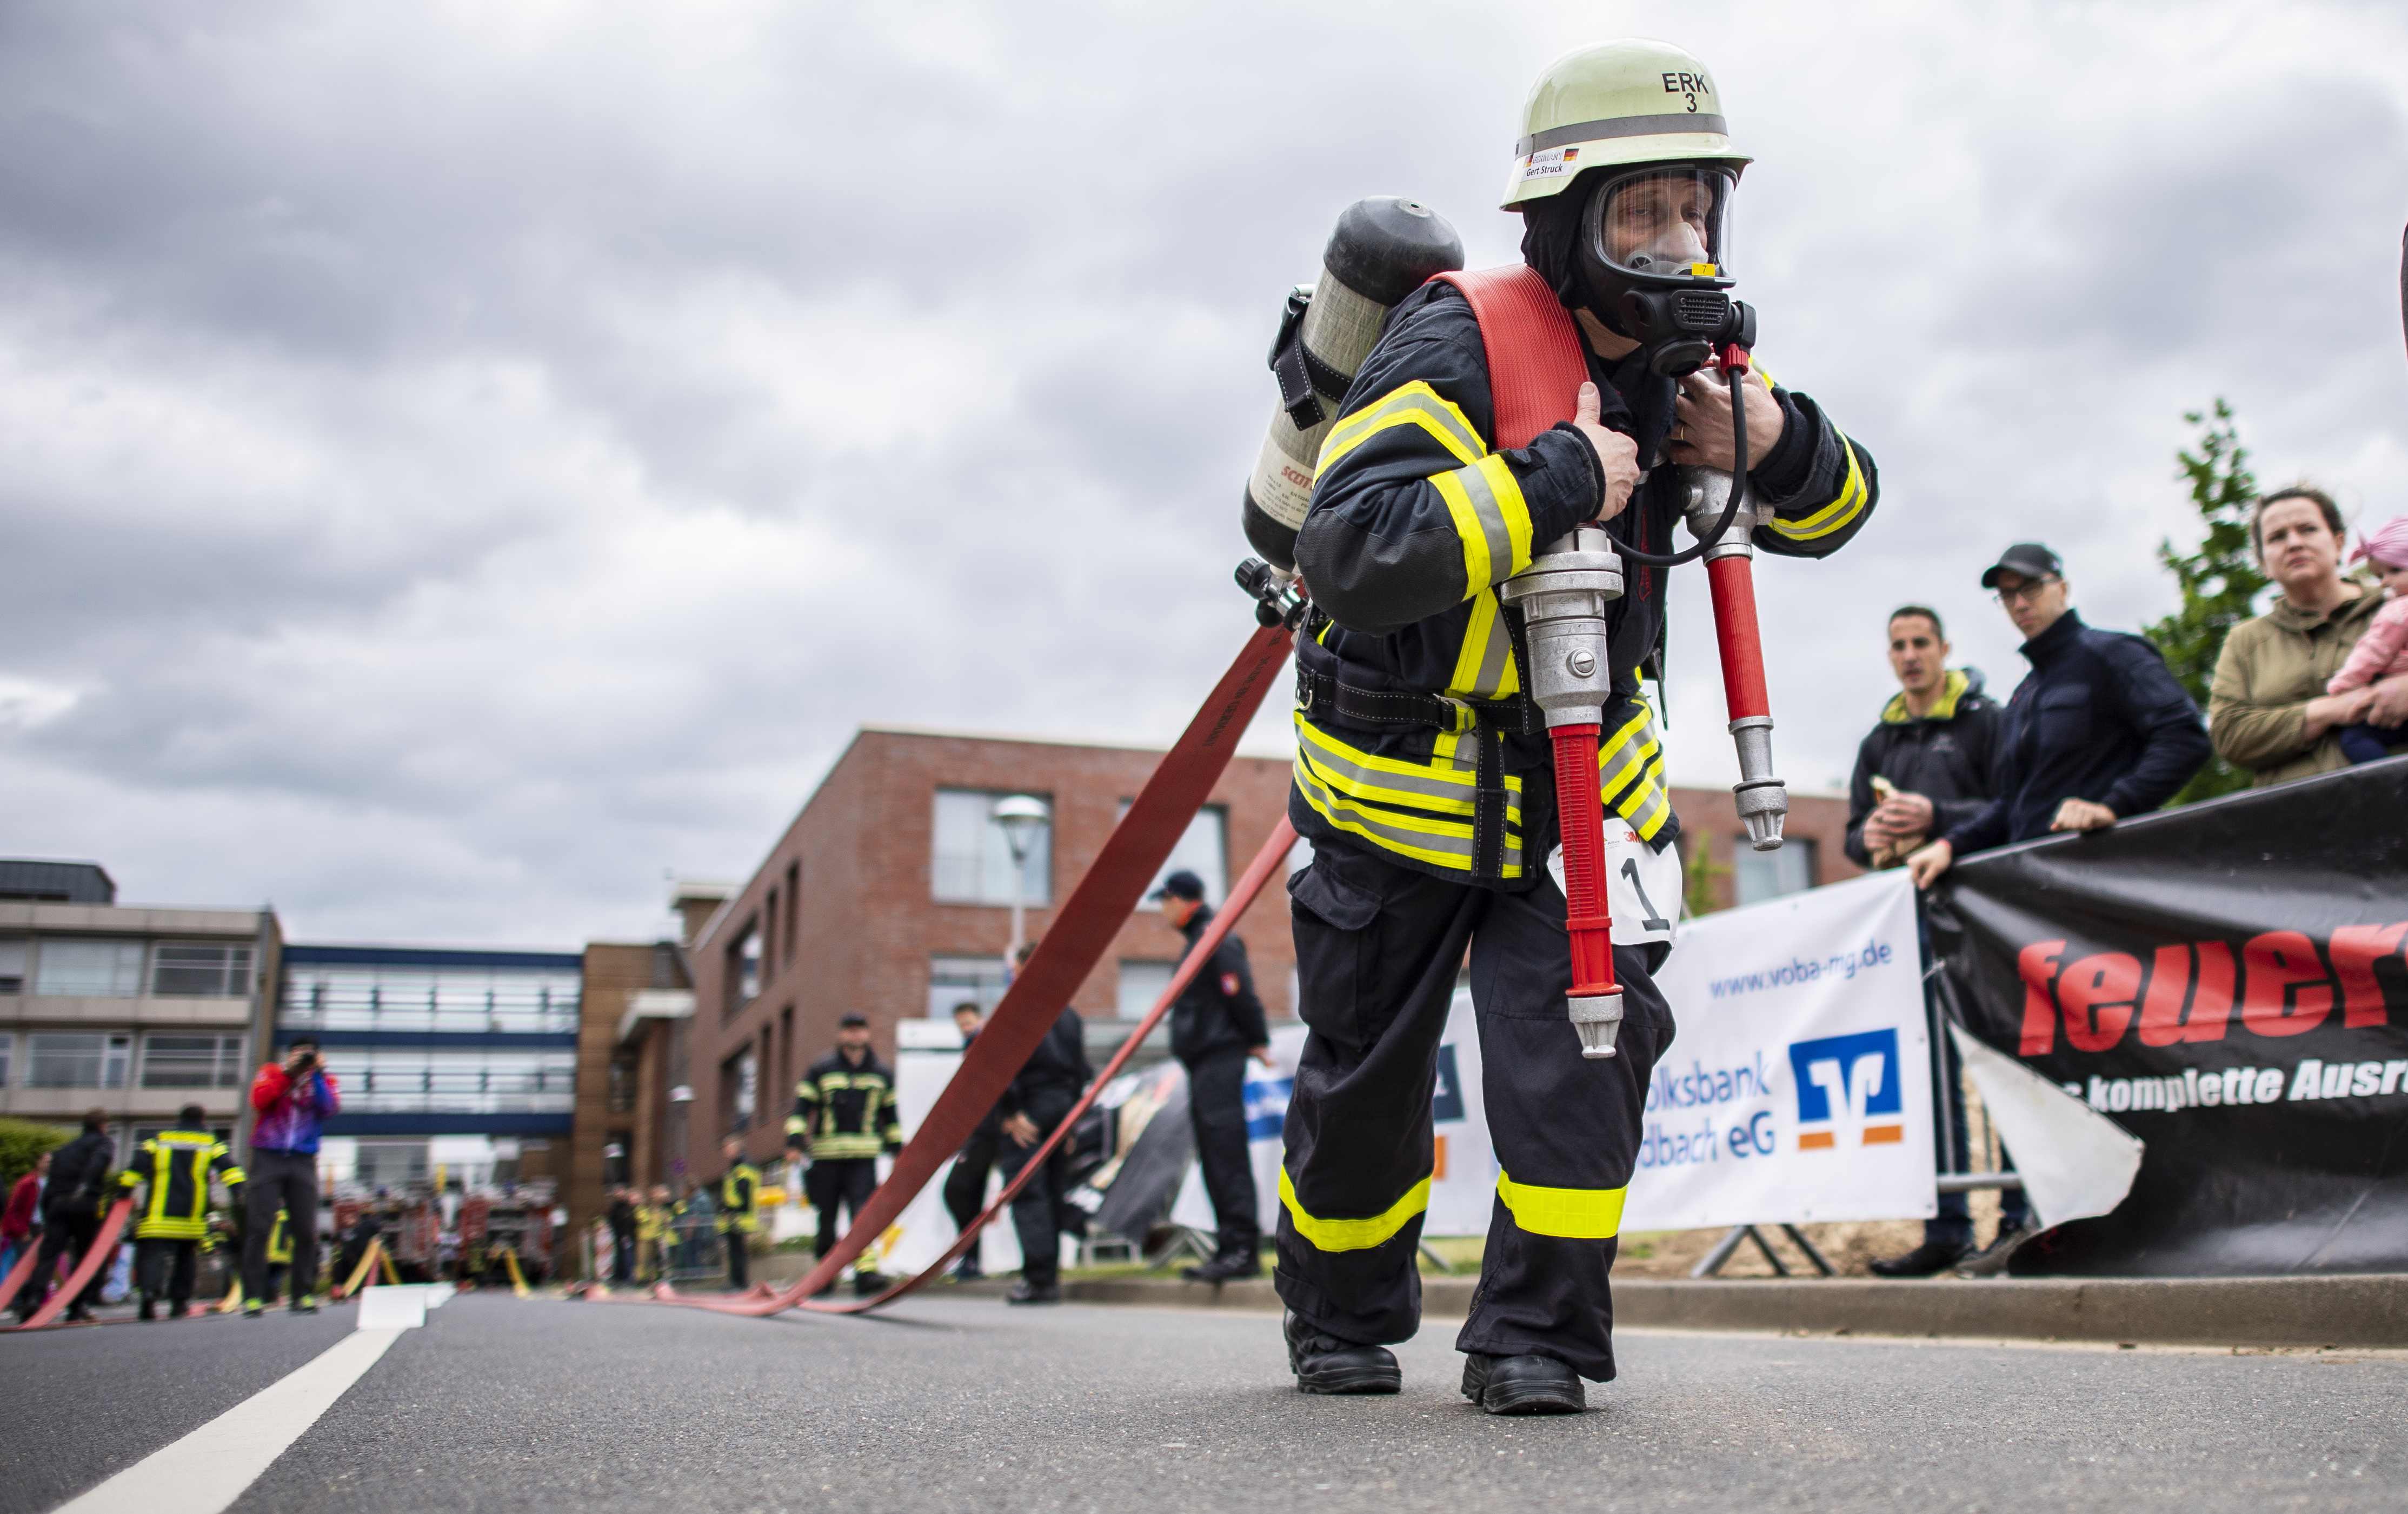 谁是世界上最坚强的消防员?300名欧洲消防员各显身手